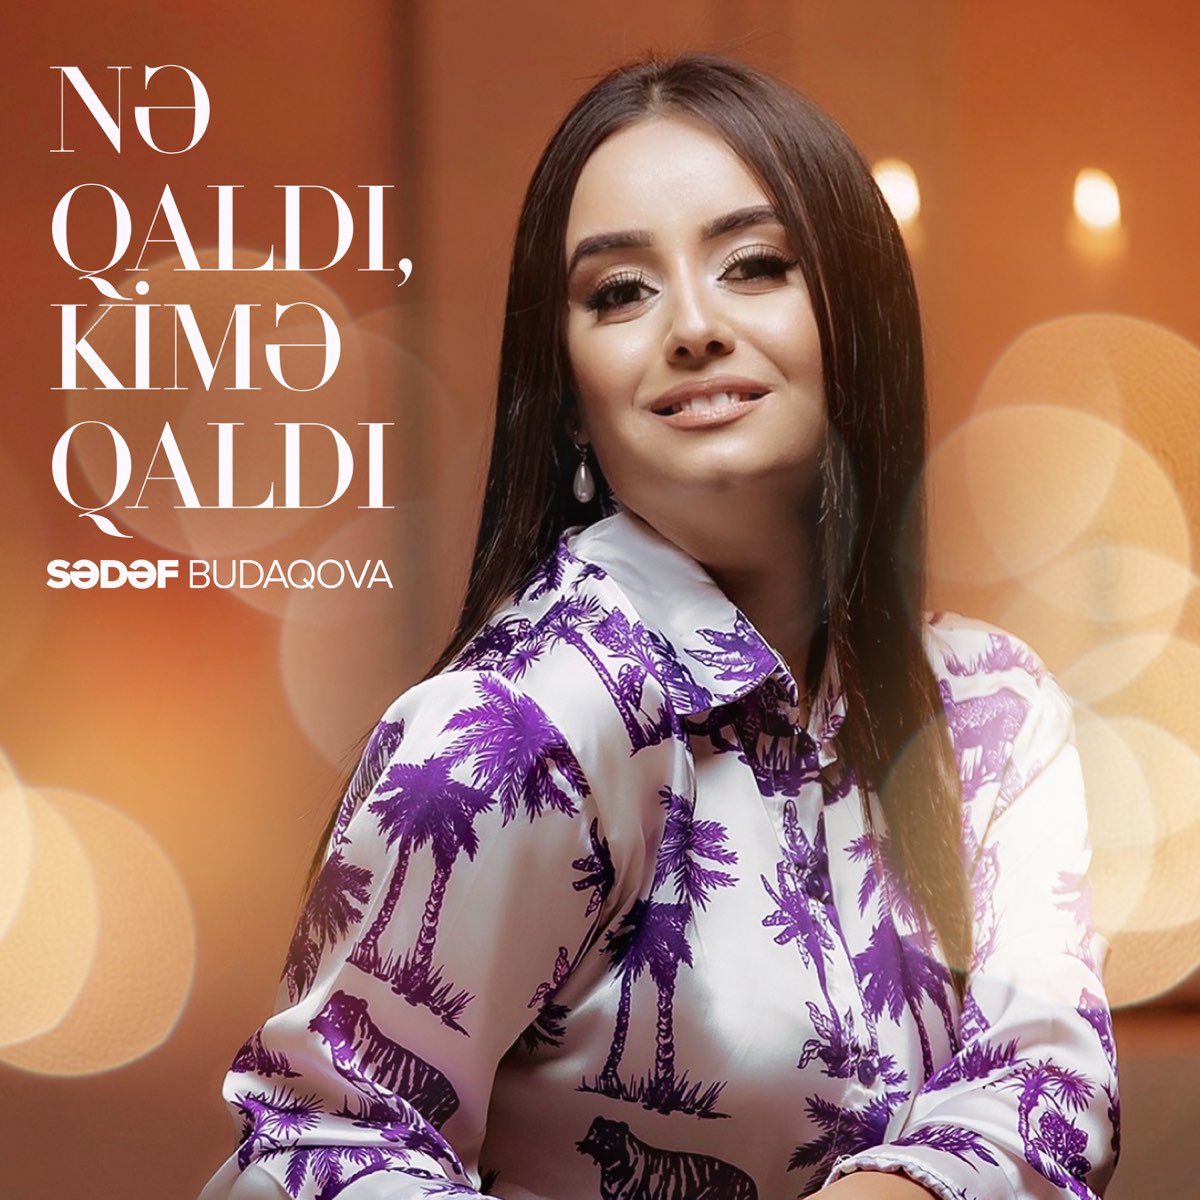 Sədəf Budaqova - Nə qaldı, kimə qaldı